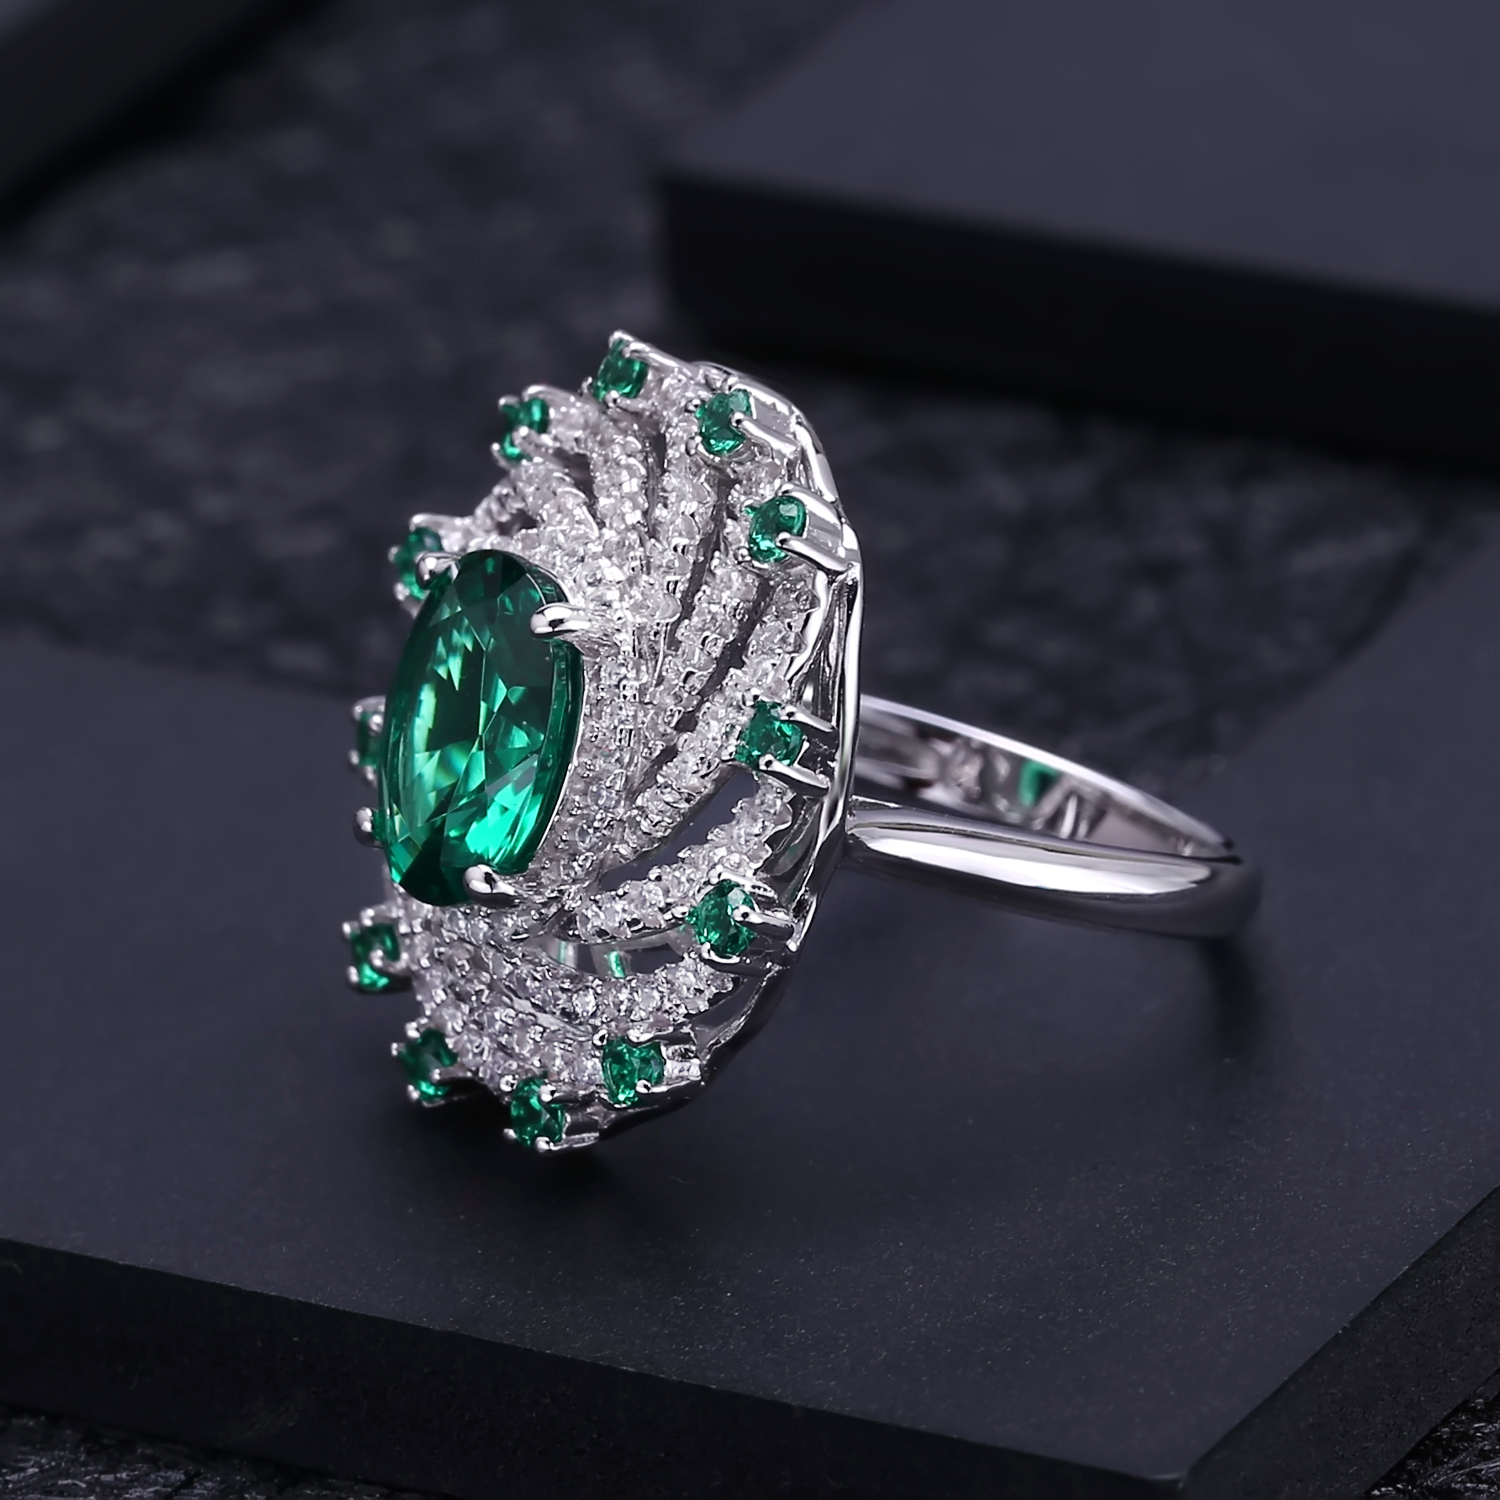 GEM'S BALLET Luxury Nano Emerald-Green Vintage Jewelry Set 925 Sterling Silver Ring Earrings Pendant Sets For Women Fine Jewelry